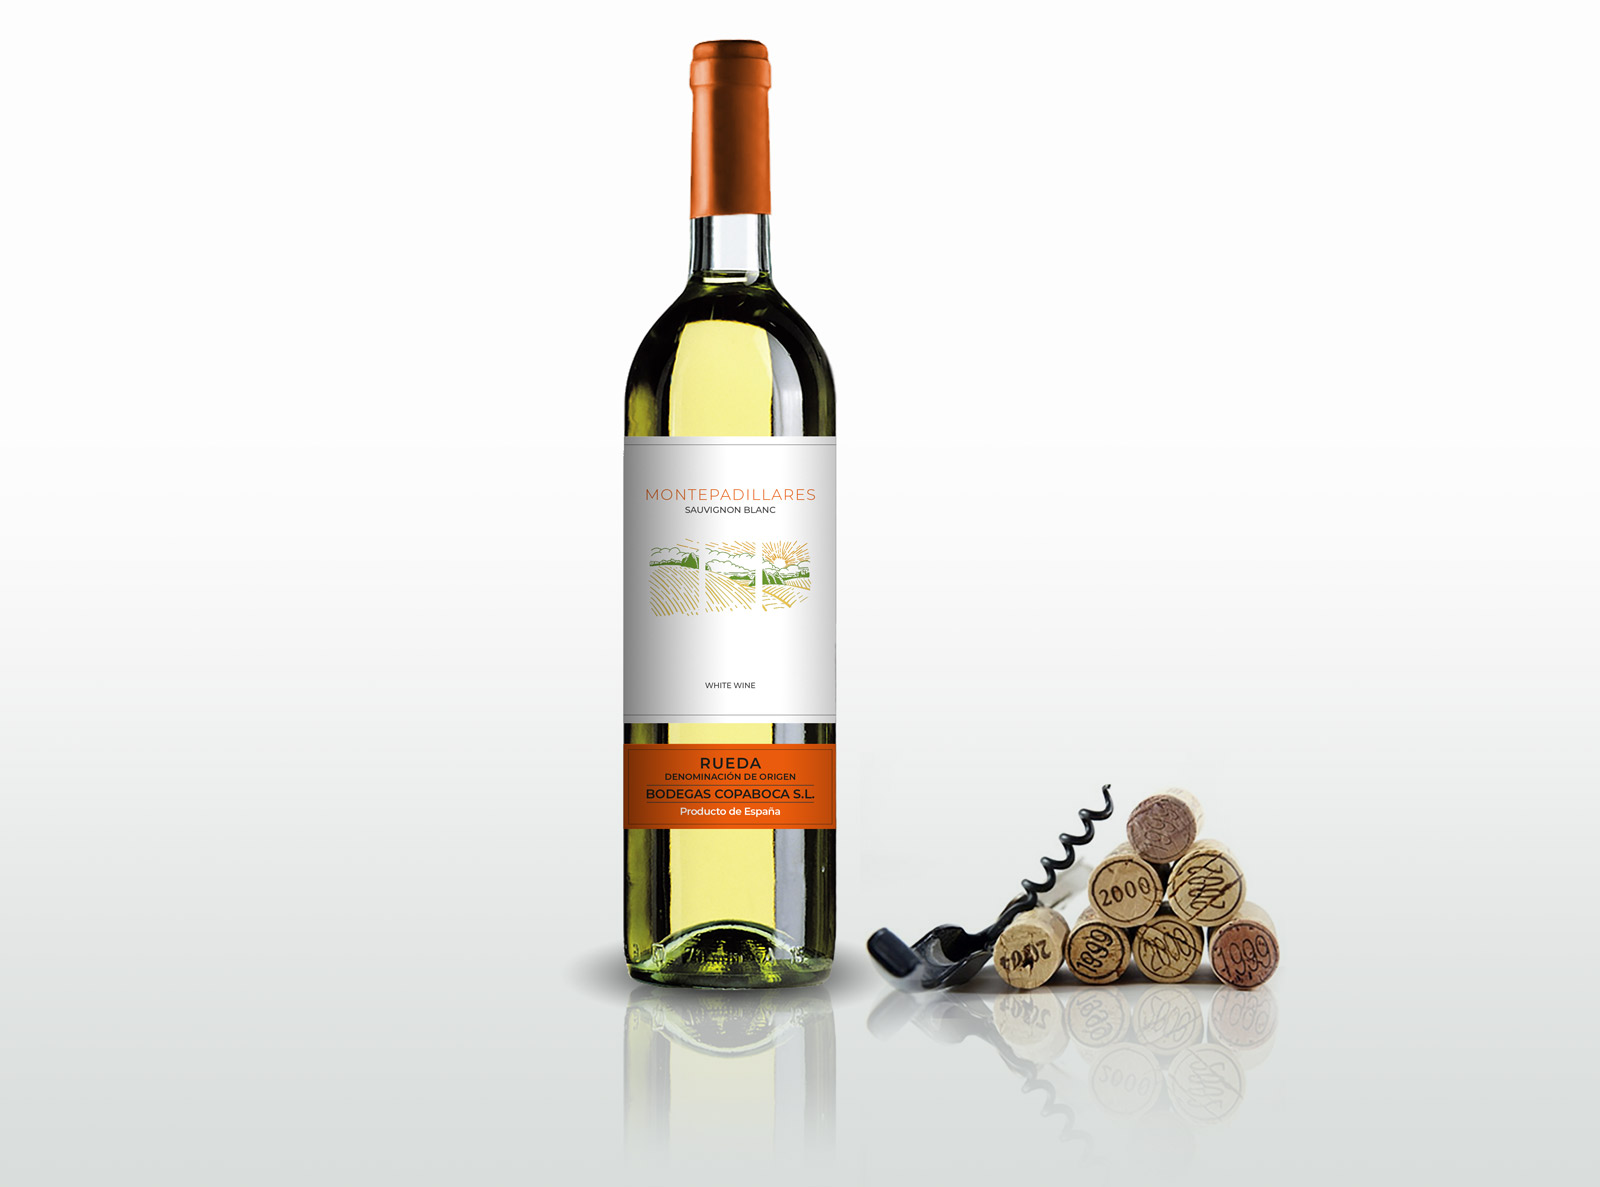 Diseño gráfico y creativo de etiquetas formato sleeve y packaging de vino para MONTEPADILLARES